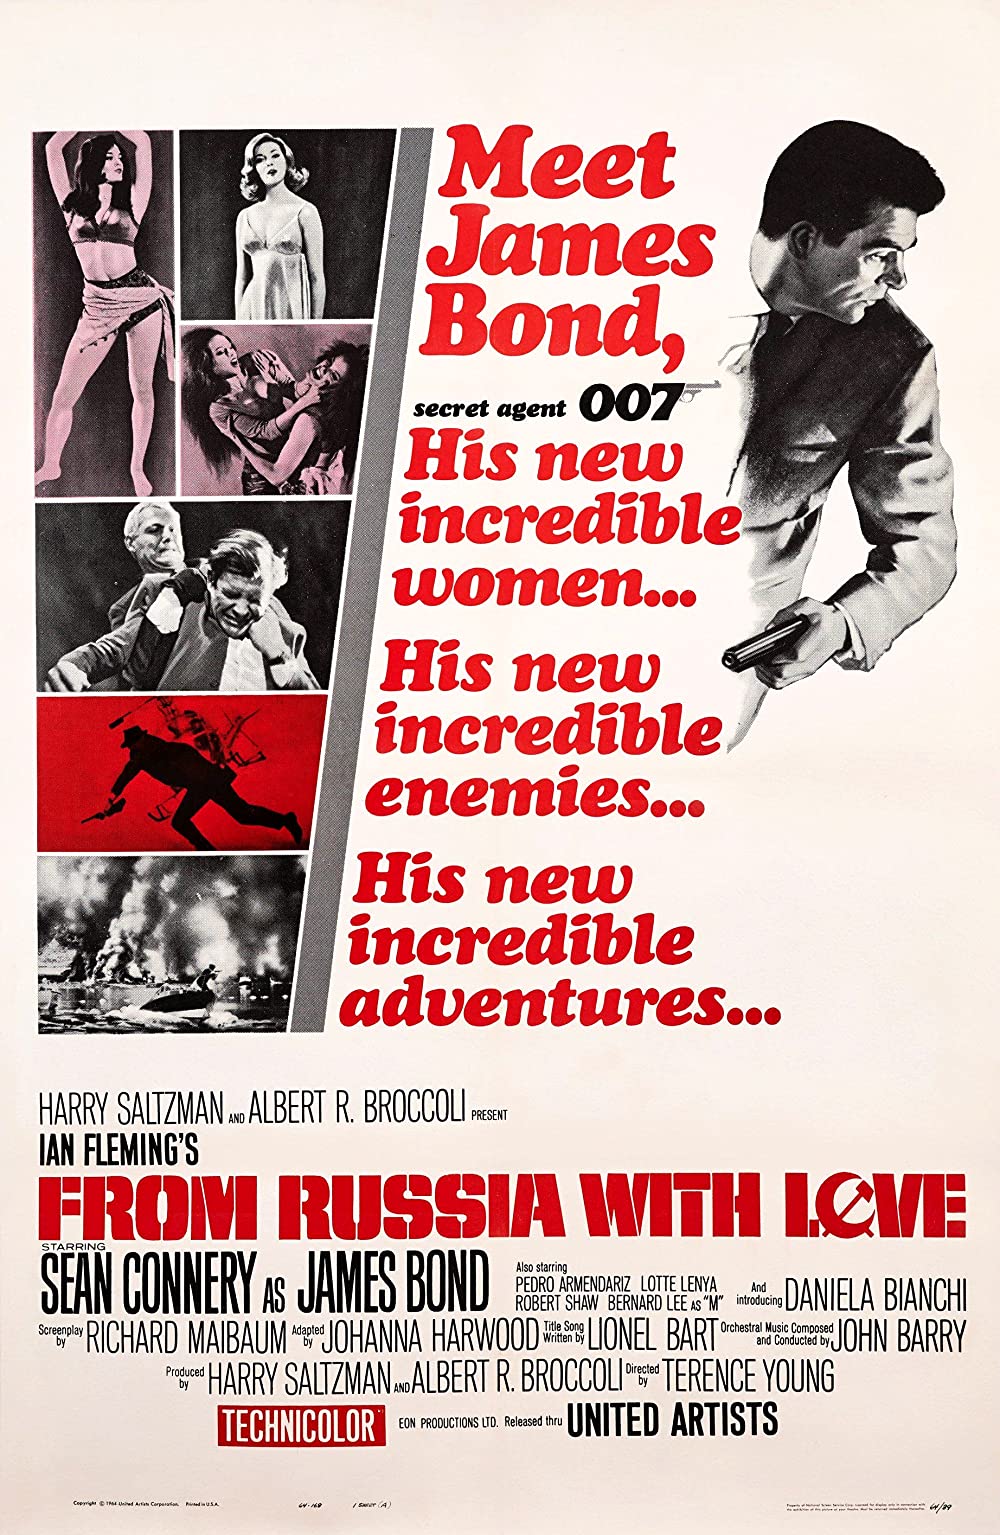 ดูหนัง James Bond 007 2 From Russia With Love (1963) เจมส์ บอนด์ 007 ภาค 2 เพชฌฆาต 007